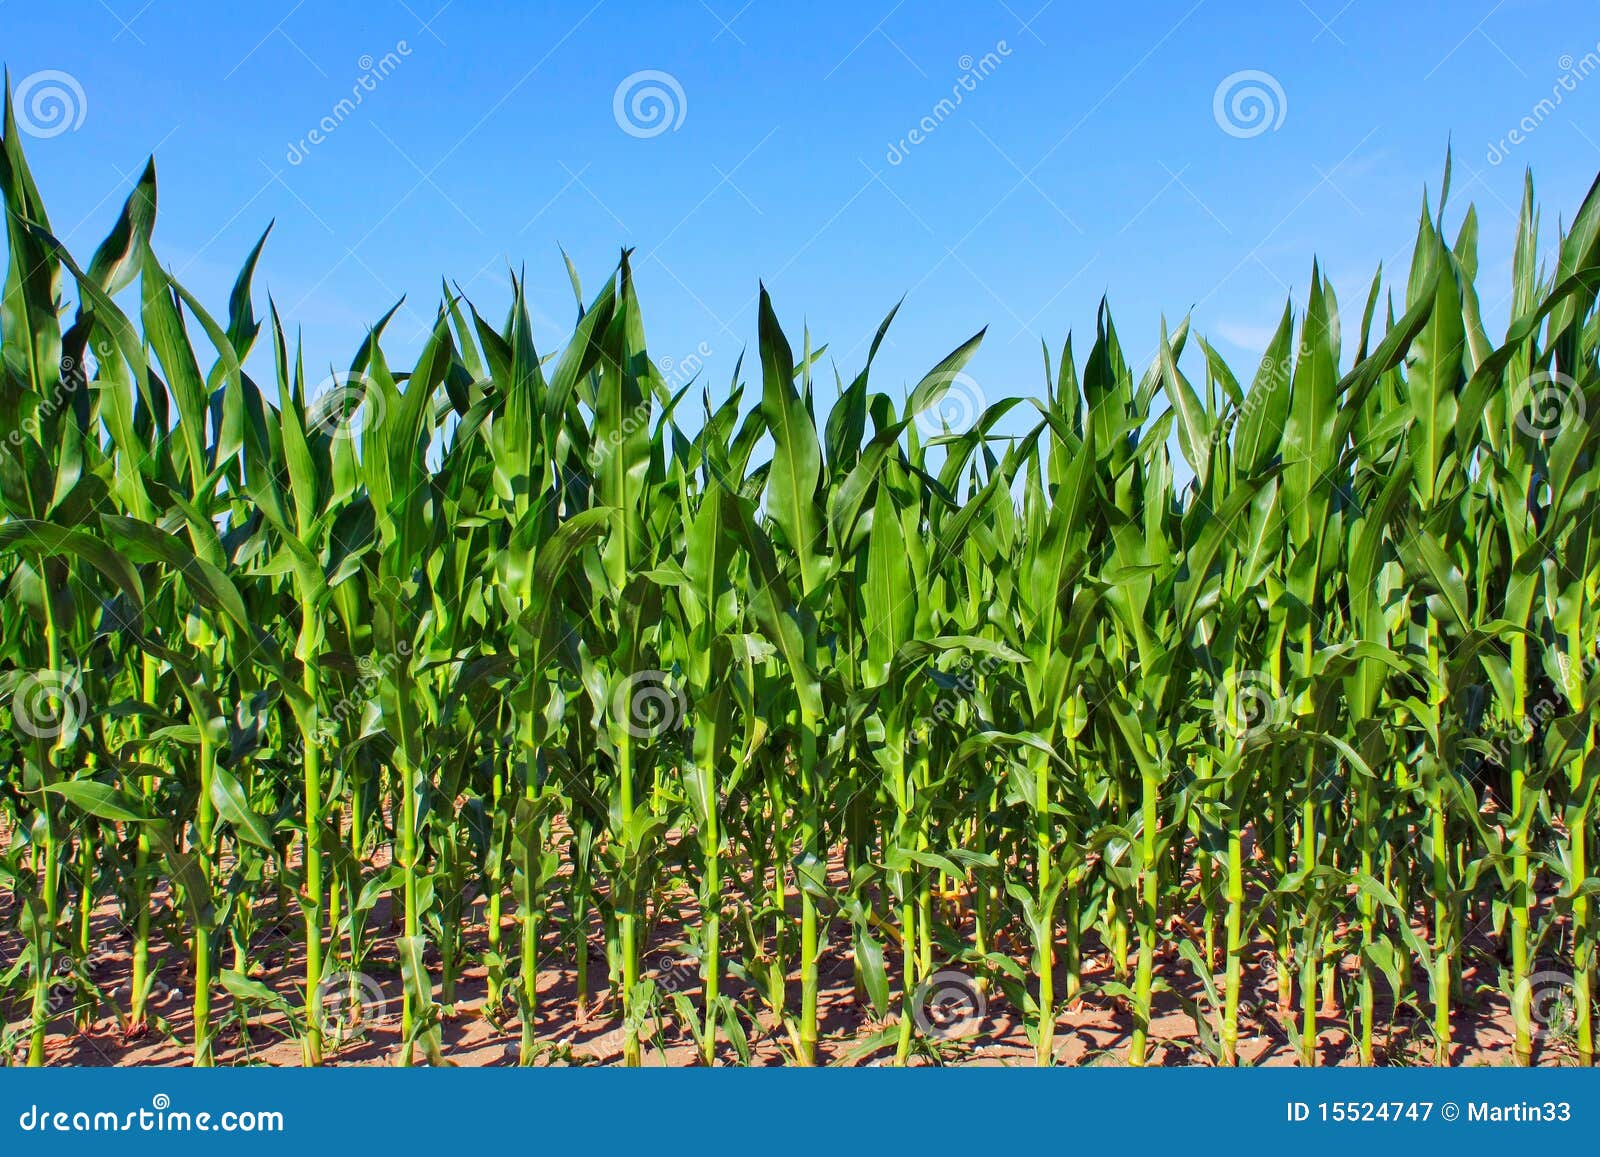 green maize field